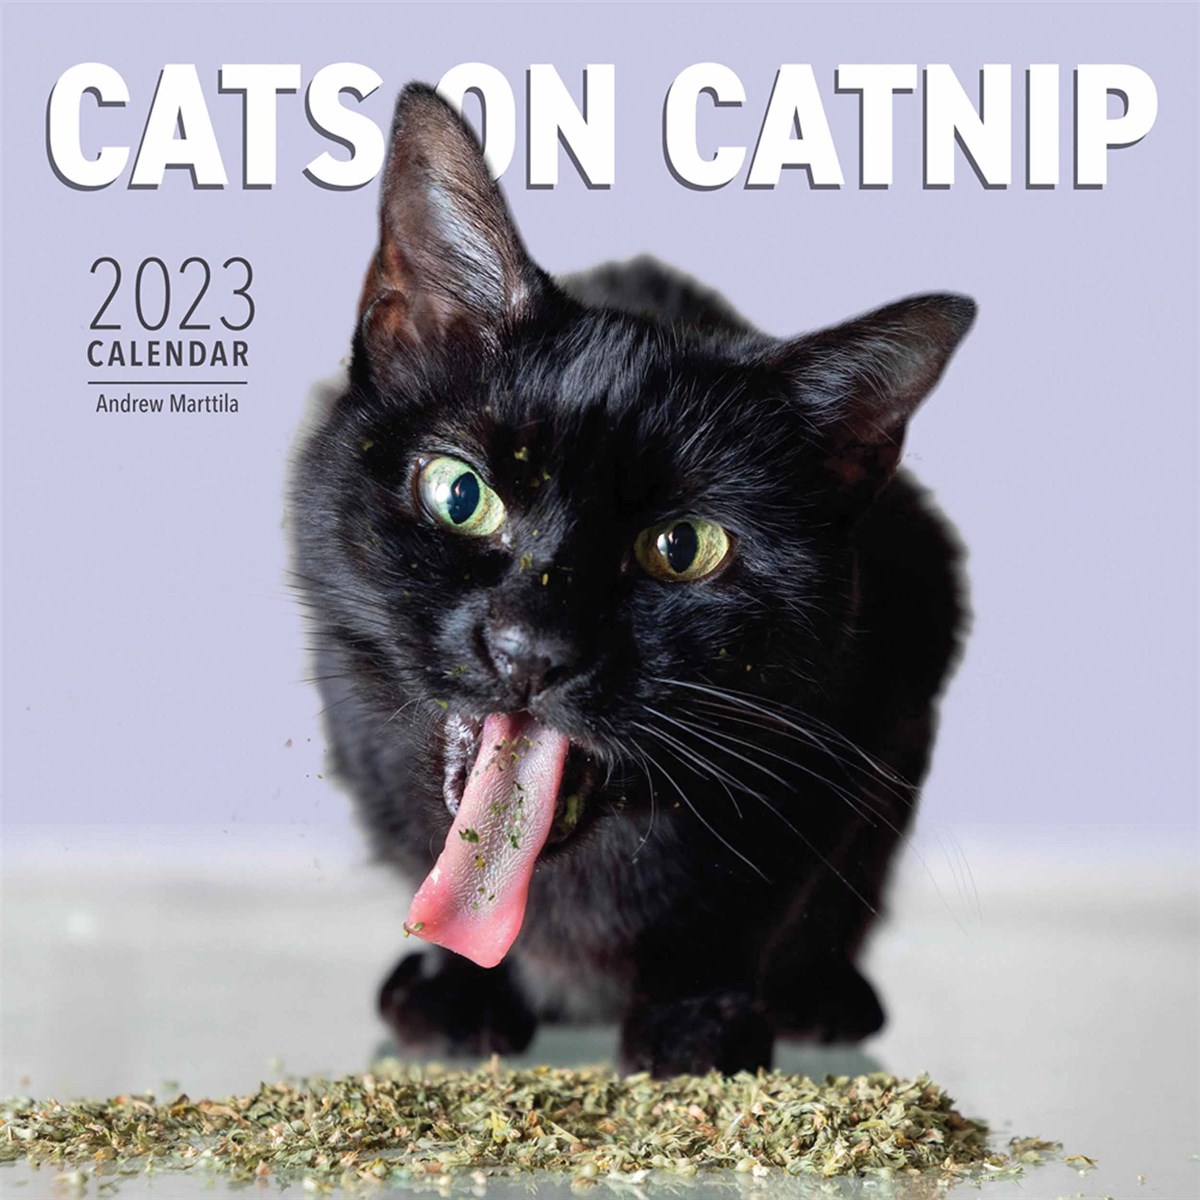 Cats On Catnip 2023 Calendars